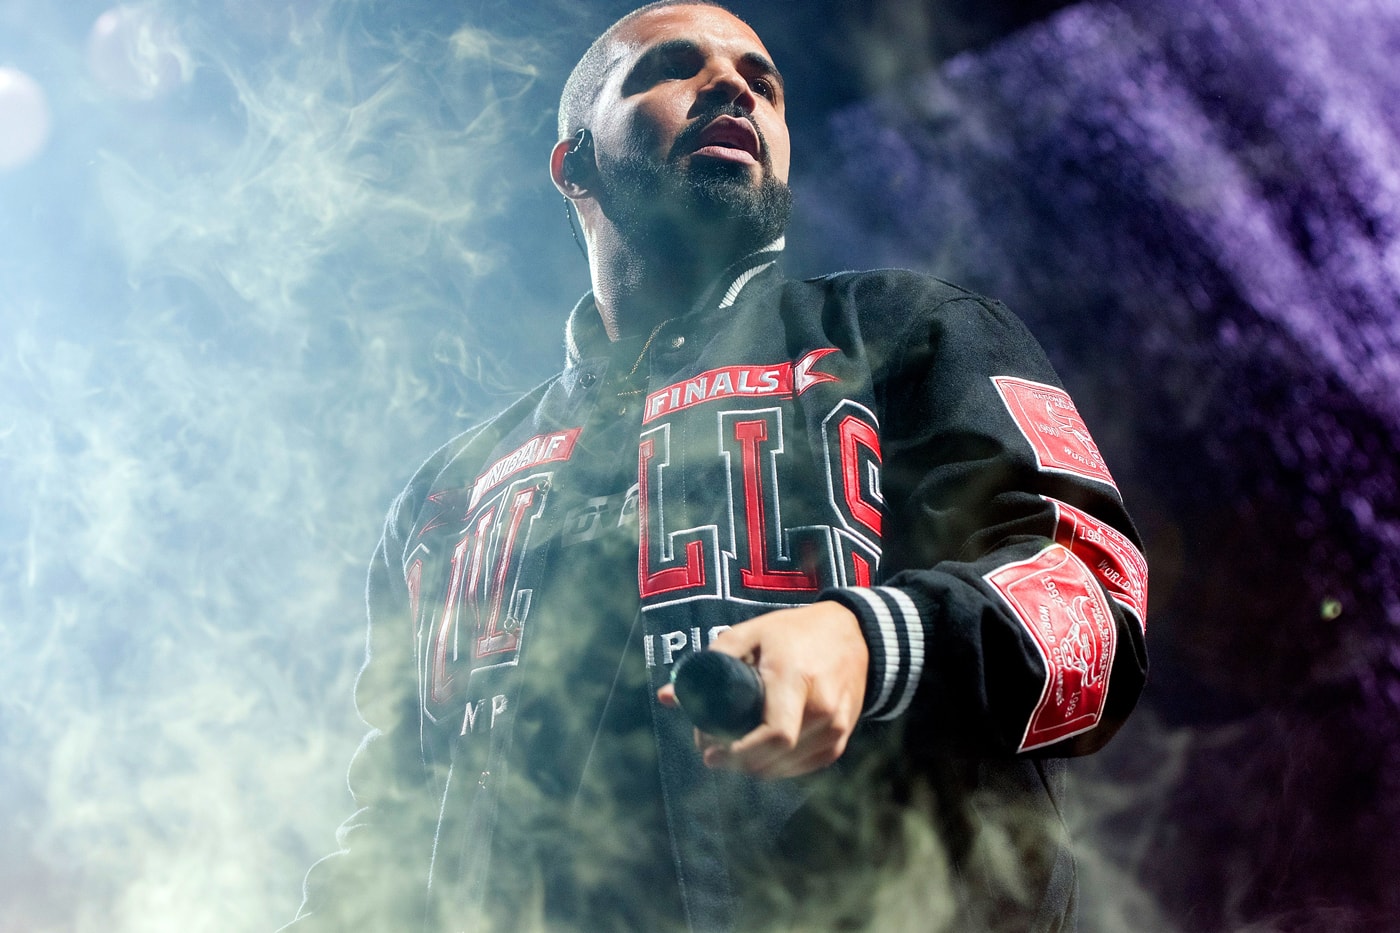 Drake Performs "Hotline Bling" and "My Way" at a Bat Mitzvah